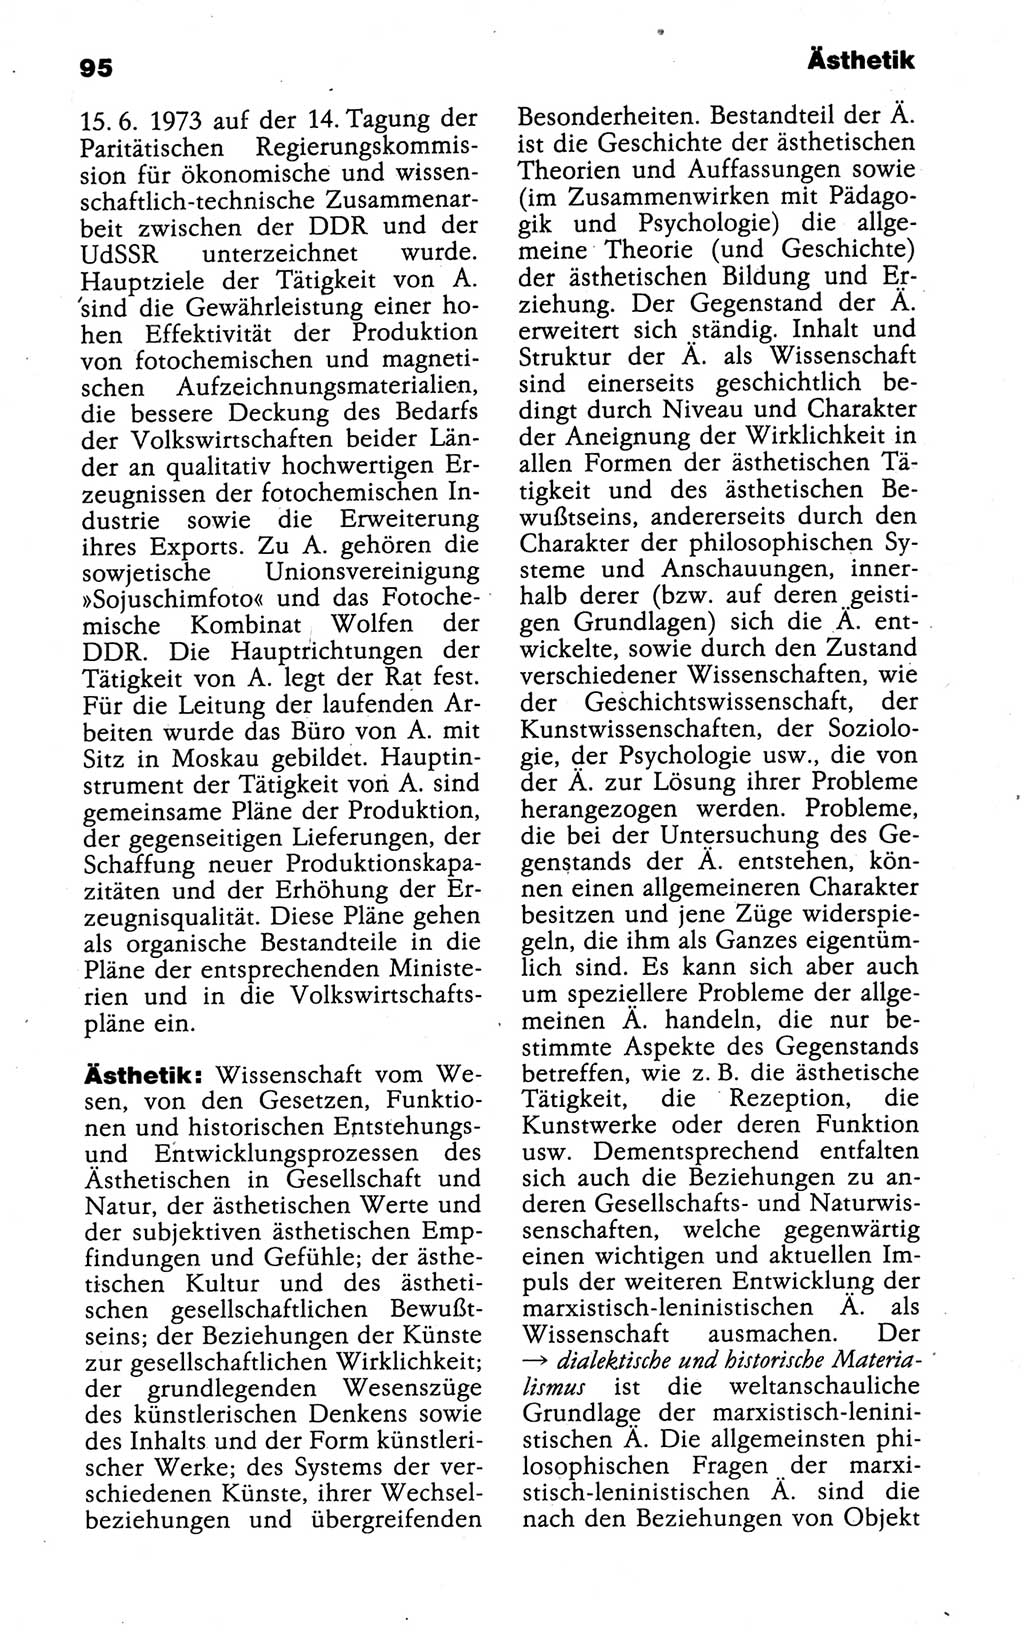 Kleines politisches Wörterbuch [Deutsche Demokratische Republik (DDR)] 1988, Seite 95 (Kl. pol. Wb. DDR 1988, S. 95)